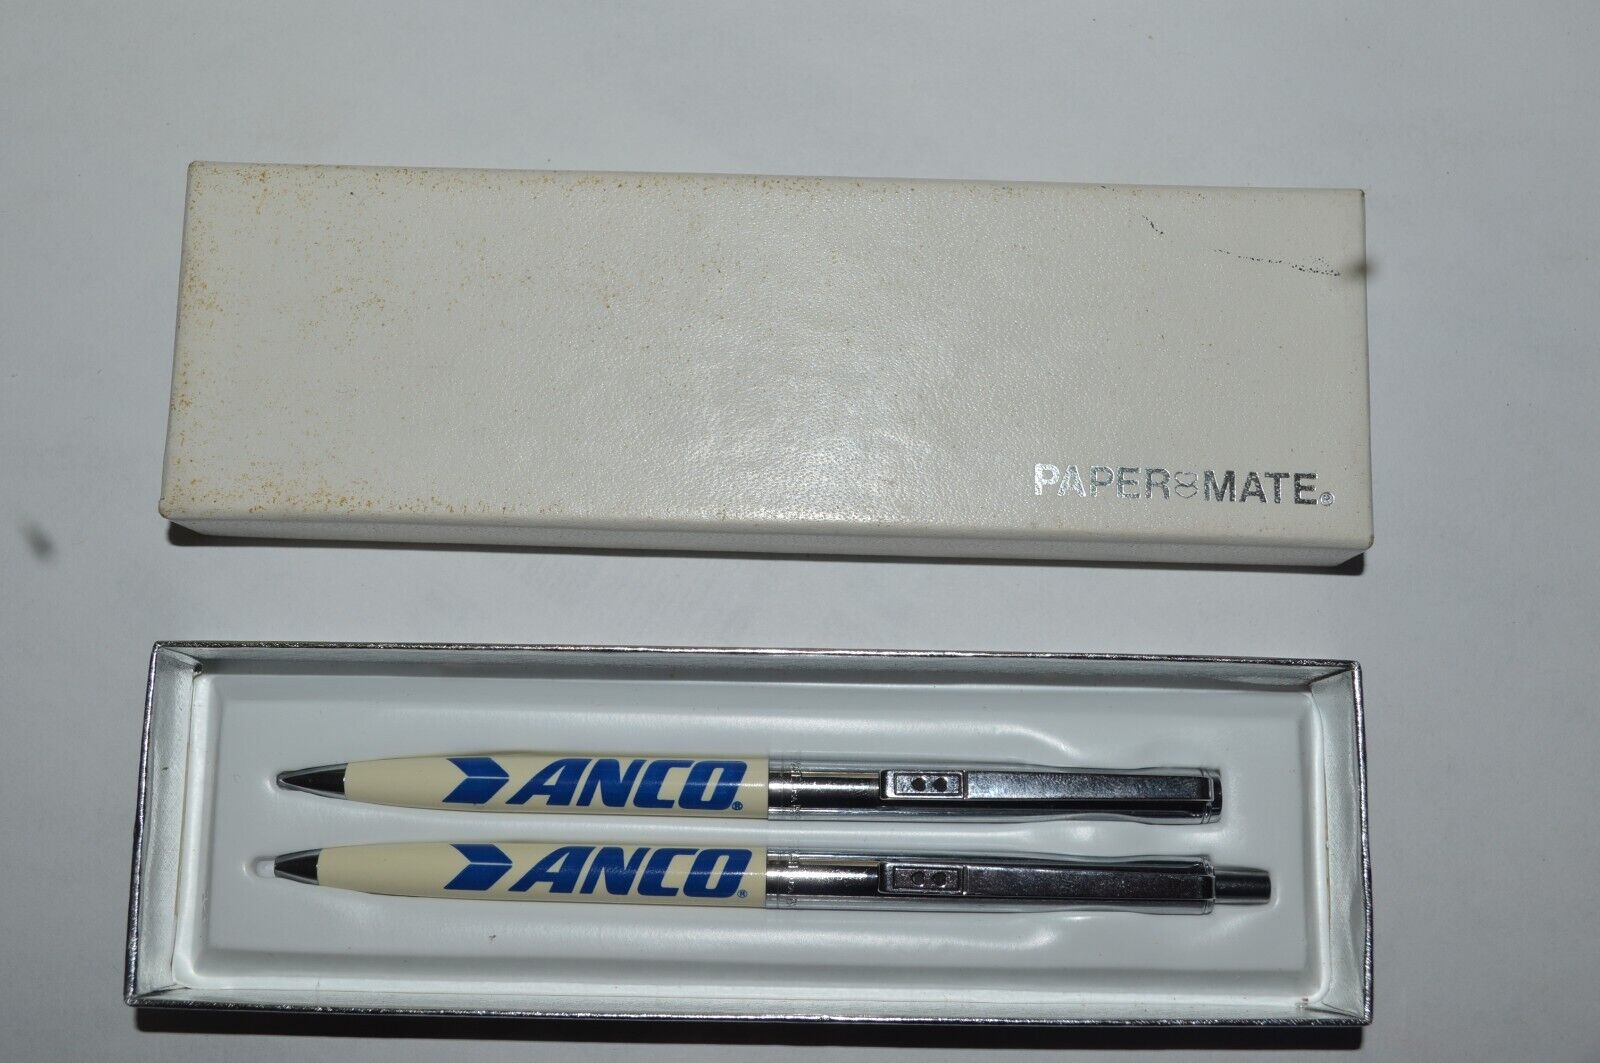 Paper Mate Profile ANCO Wipers Promo Pen & Pencil Set Circa 1979 New Old Stock